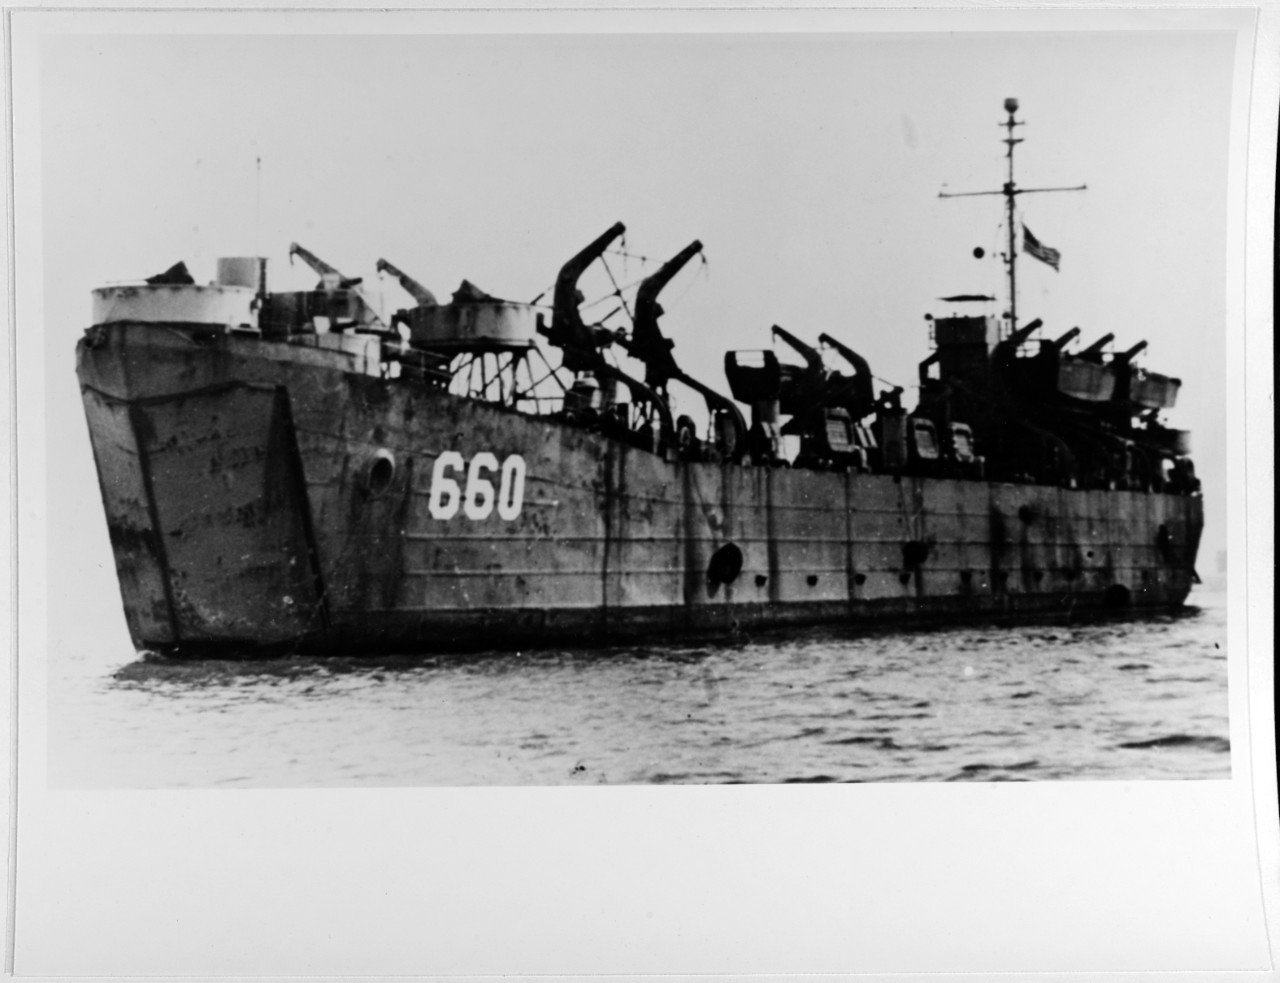 USS LST-660